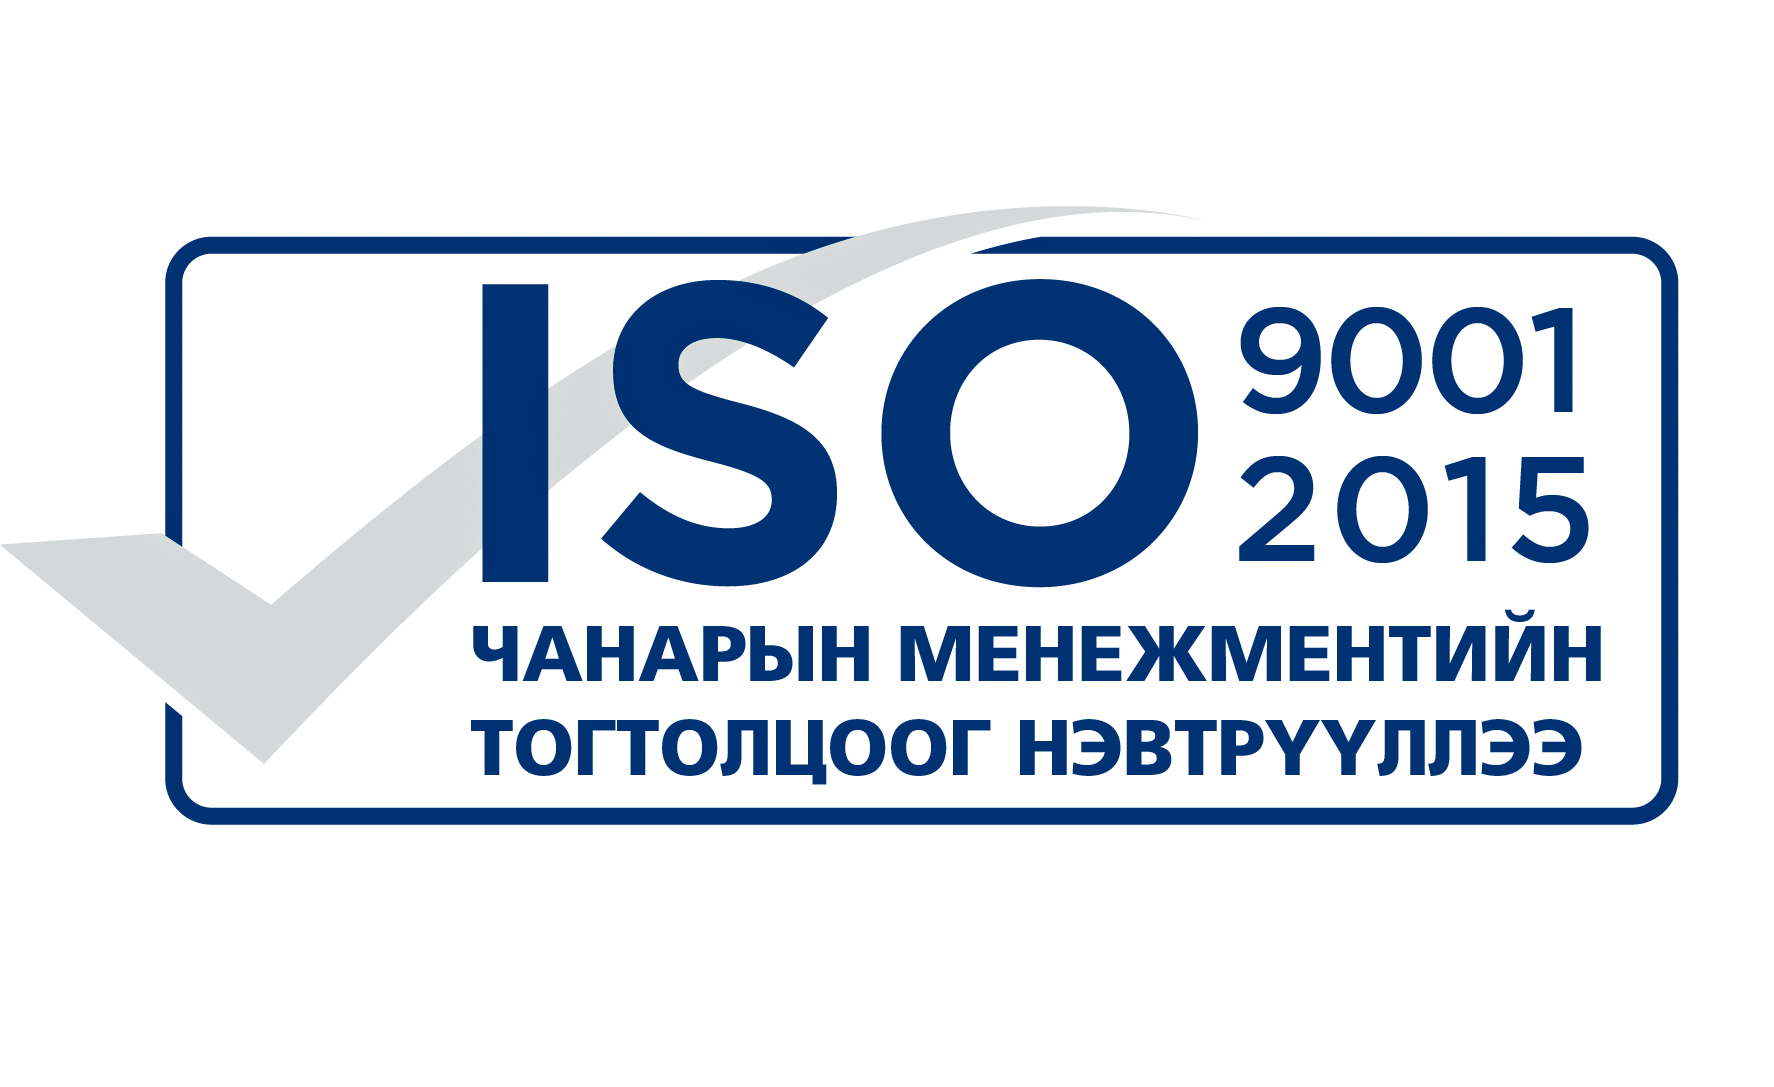 ОРХОН АЙМАГ ДАХЬ УЛСЫН БҮРТГЭЛИЙН ХЭЛТЭС ISO 9001:2015 ЧАНАРЫН СТАНДАРТЫН ГЭРЧИЛГЭЭ ГАРДАН АВЛАА